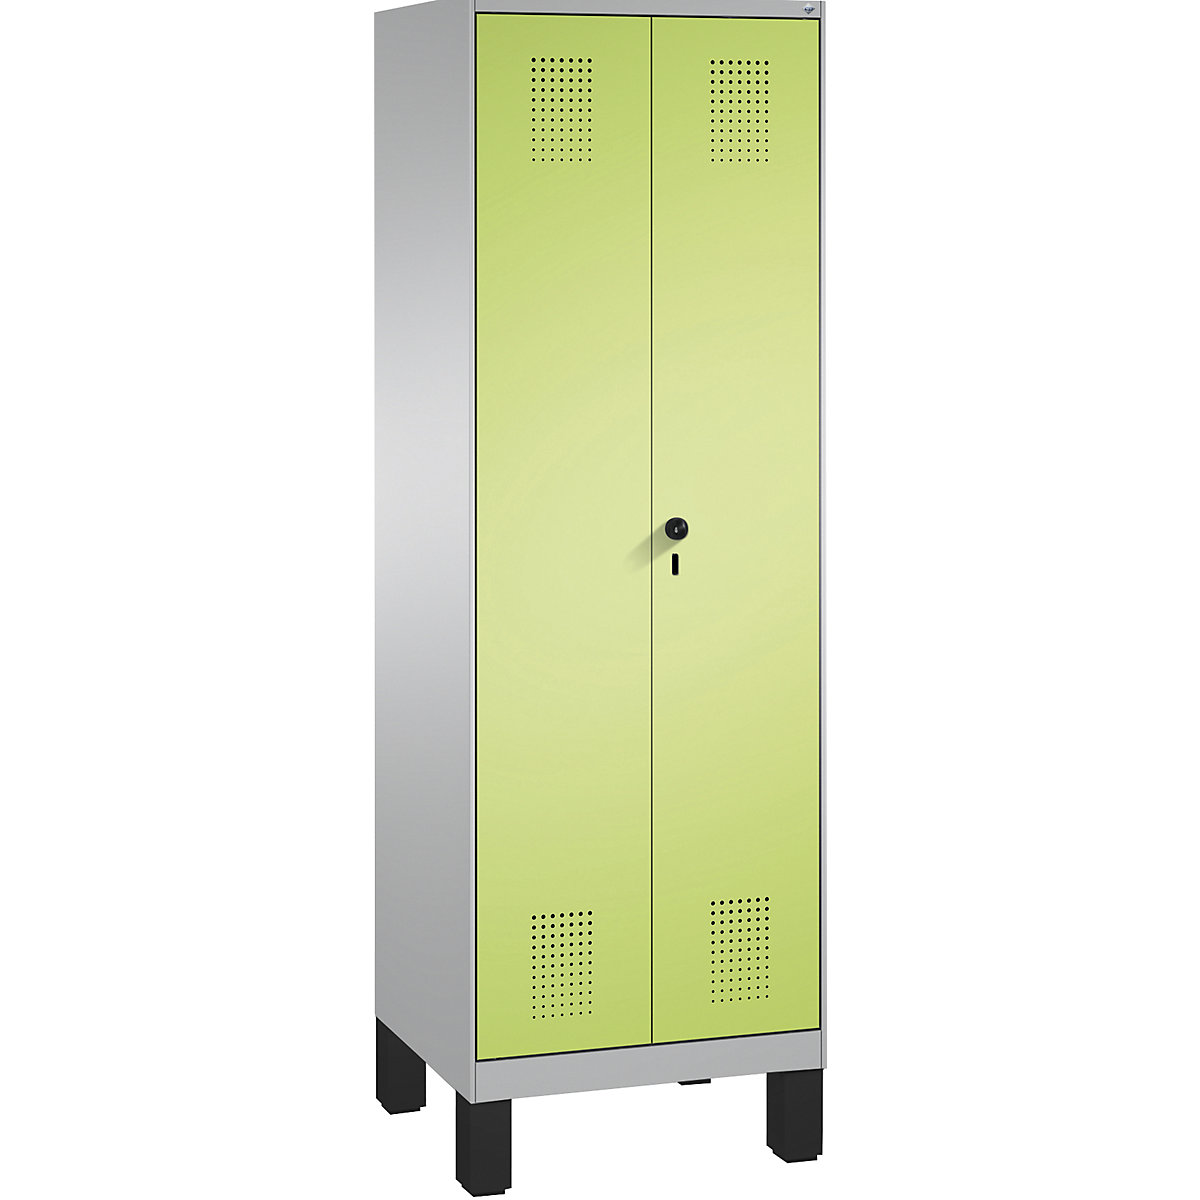 EVOLO tárolószekrény, egymásra csukódó ajtók, lábakkal – C+P, 1 fülke, szélesség 600 mm, 4 polccal, fehéralumínium / viridinzöld-4